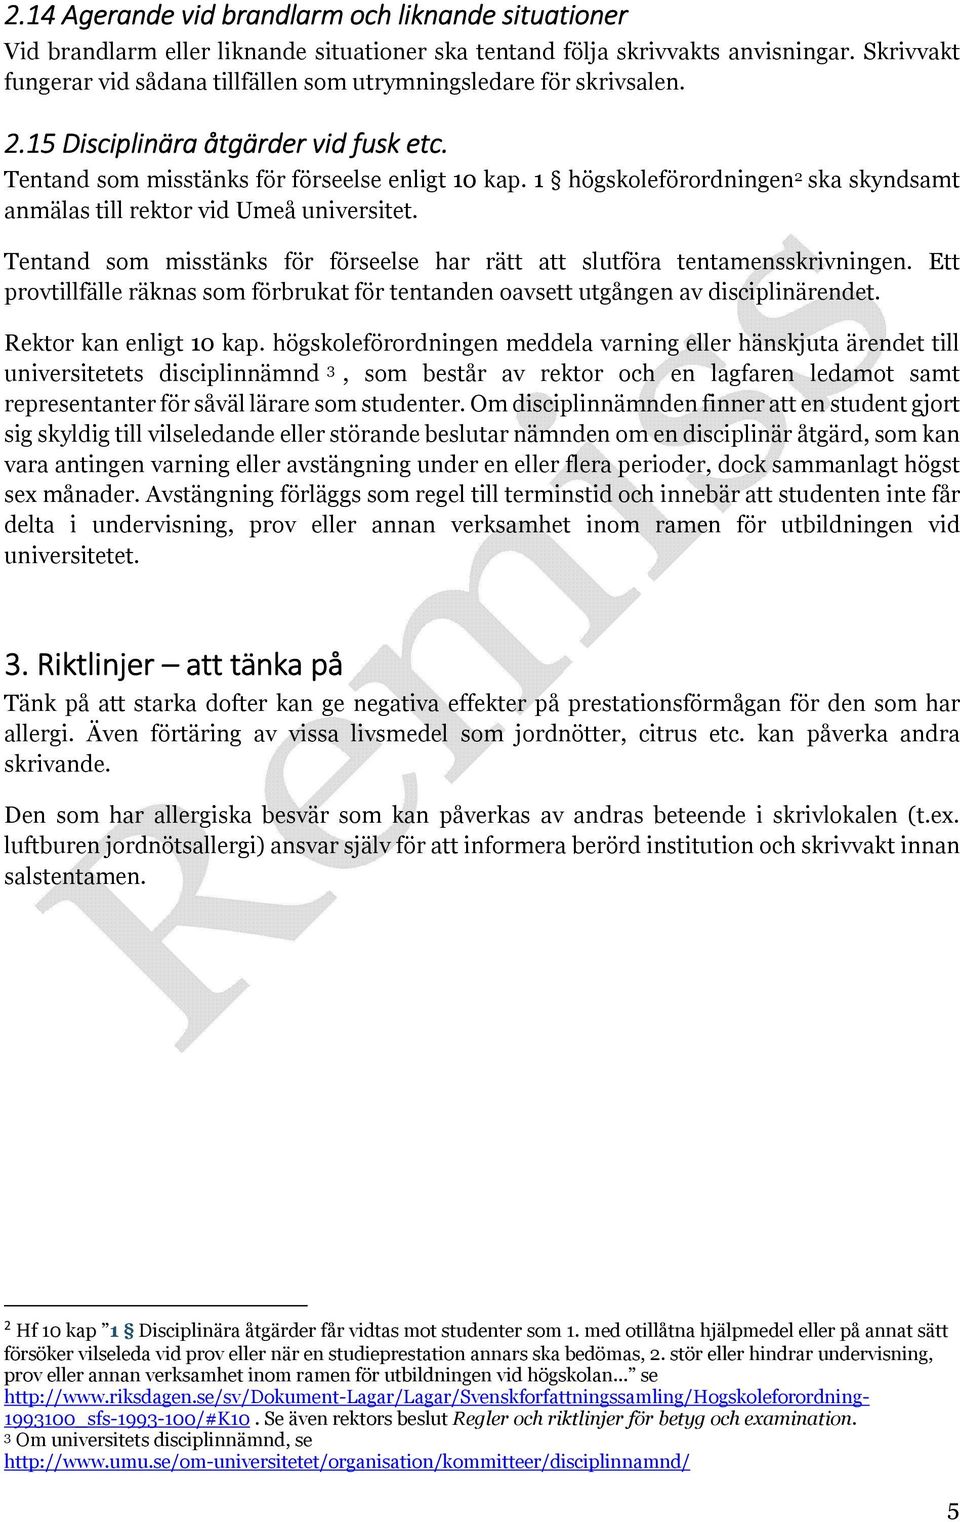 1 högskoleförordningen 2 ska skyndsamt anmälas till rektor vid Umeå universitet. Tentand som misstänks för förseelse har rätt att slutföra tentamensskrivningen.